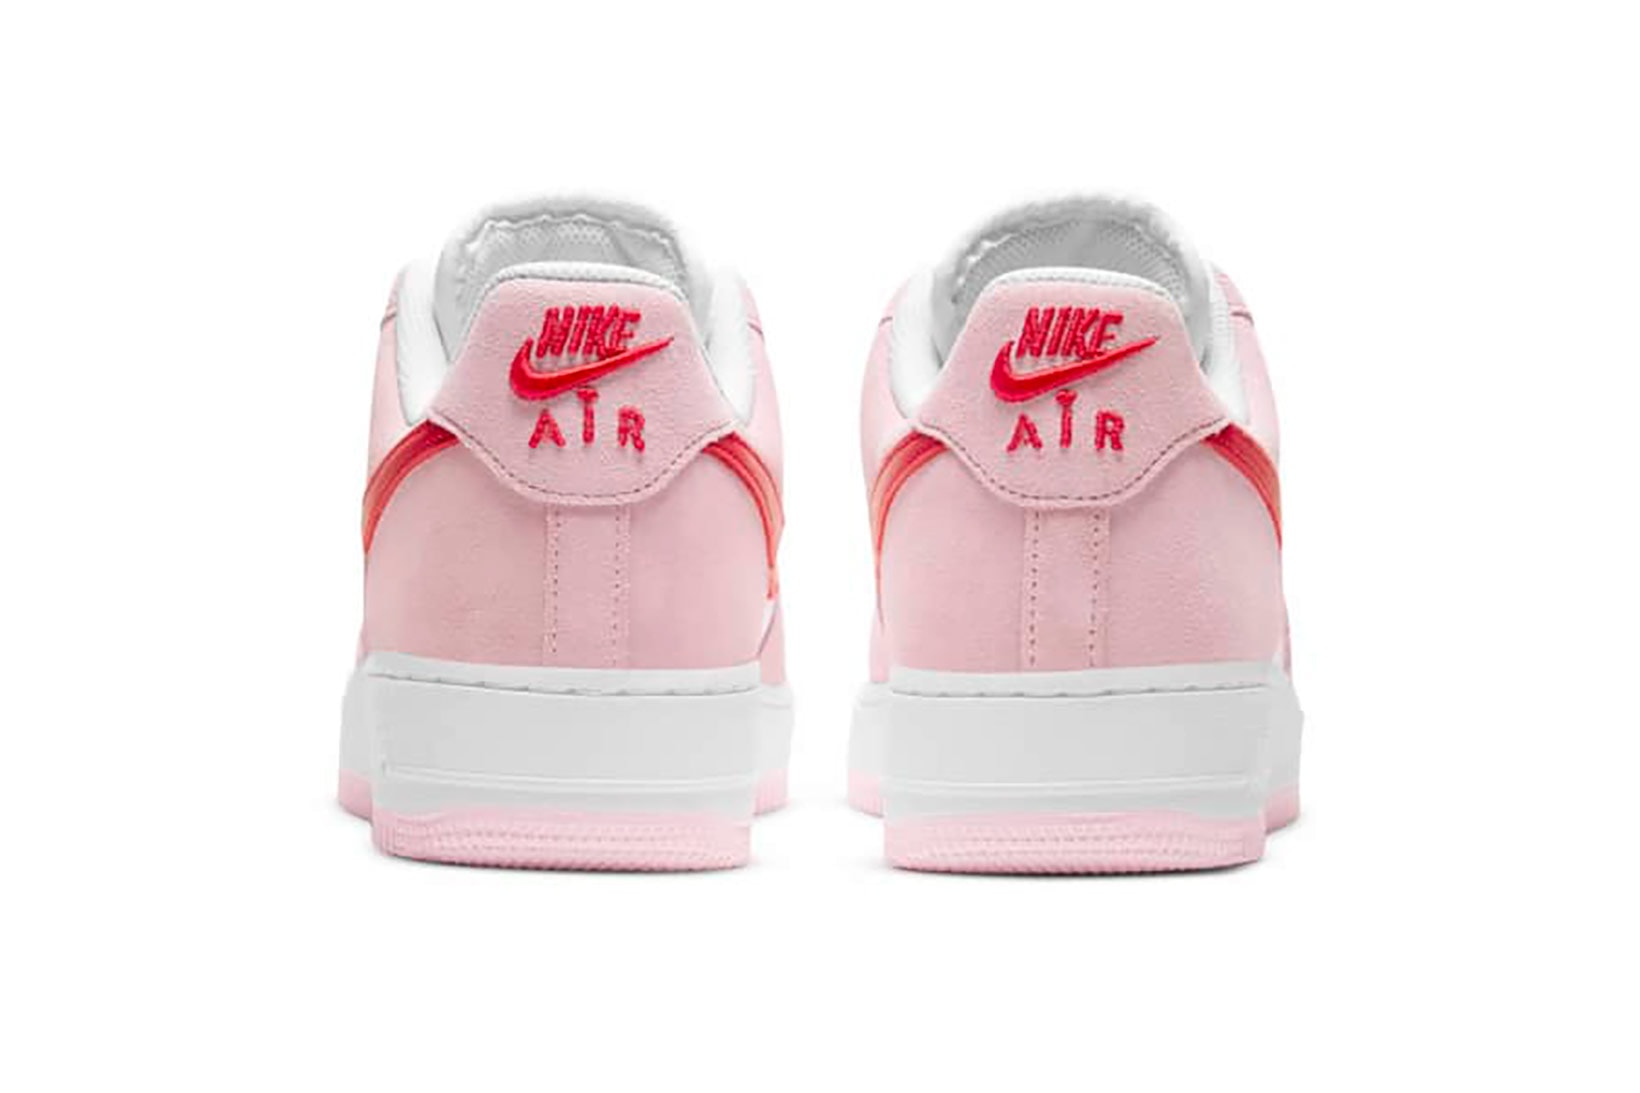 nike air force 1 af1 07 valentines day sneakers pink red white shoes footwear kicks sneakerhead heel